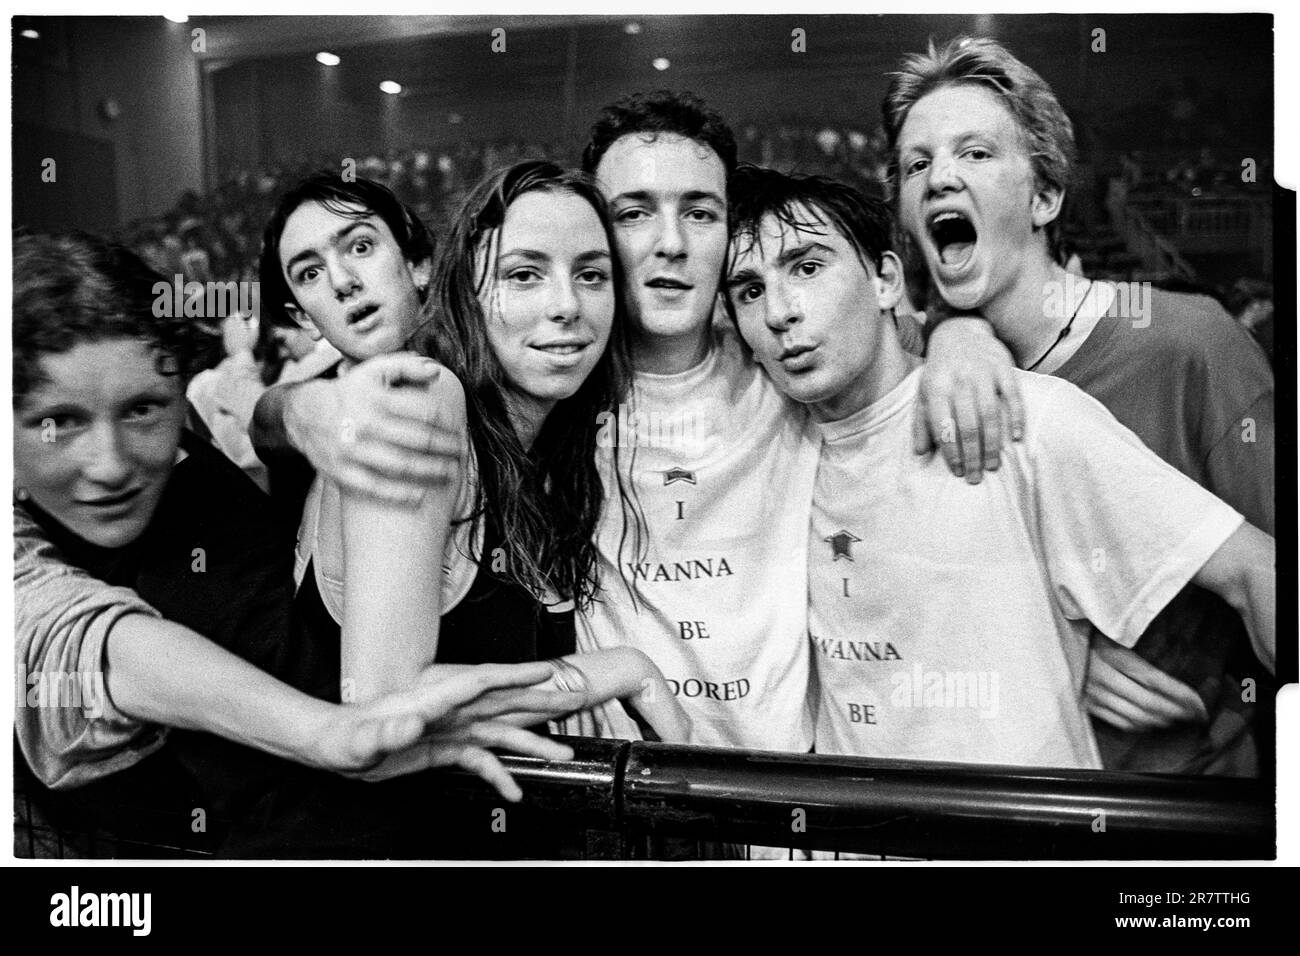 STONE ROSES, KONZERT-FANS, 1994: Die erste Reihe der Zuschauer, als die Stone Roses im Newport Centre in Newport, Wales, Großbritannien spielen, um ihr zweites Album am 4. Dezember 1994 zu unterstützen. Foto: Rob Watkins Stockfoto